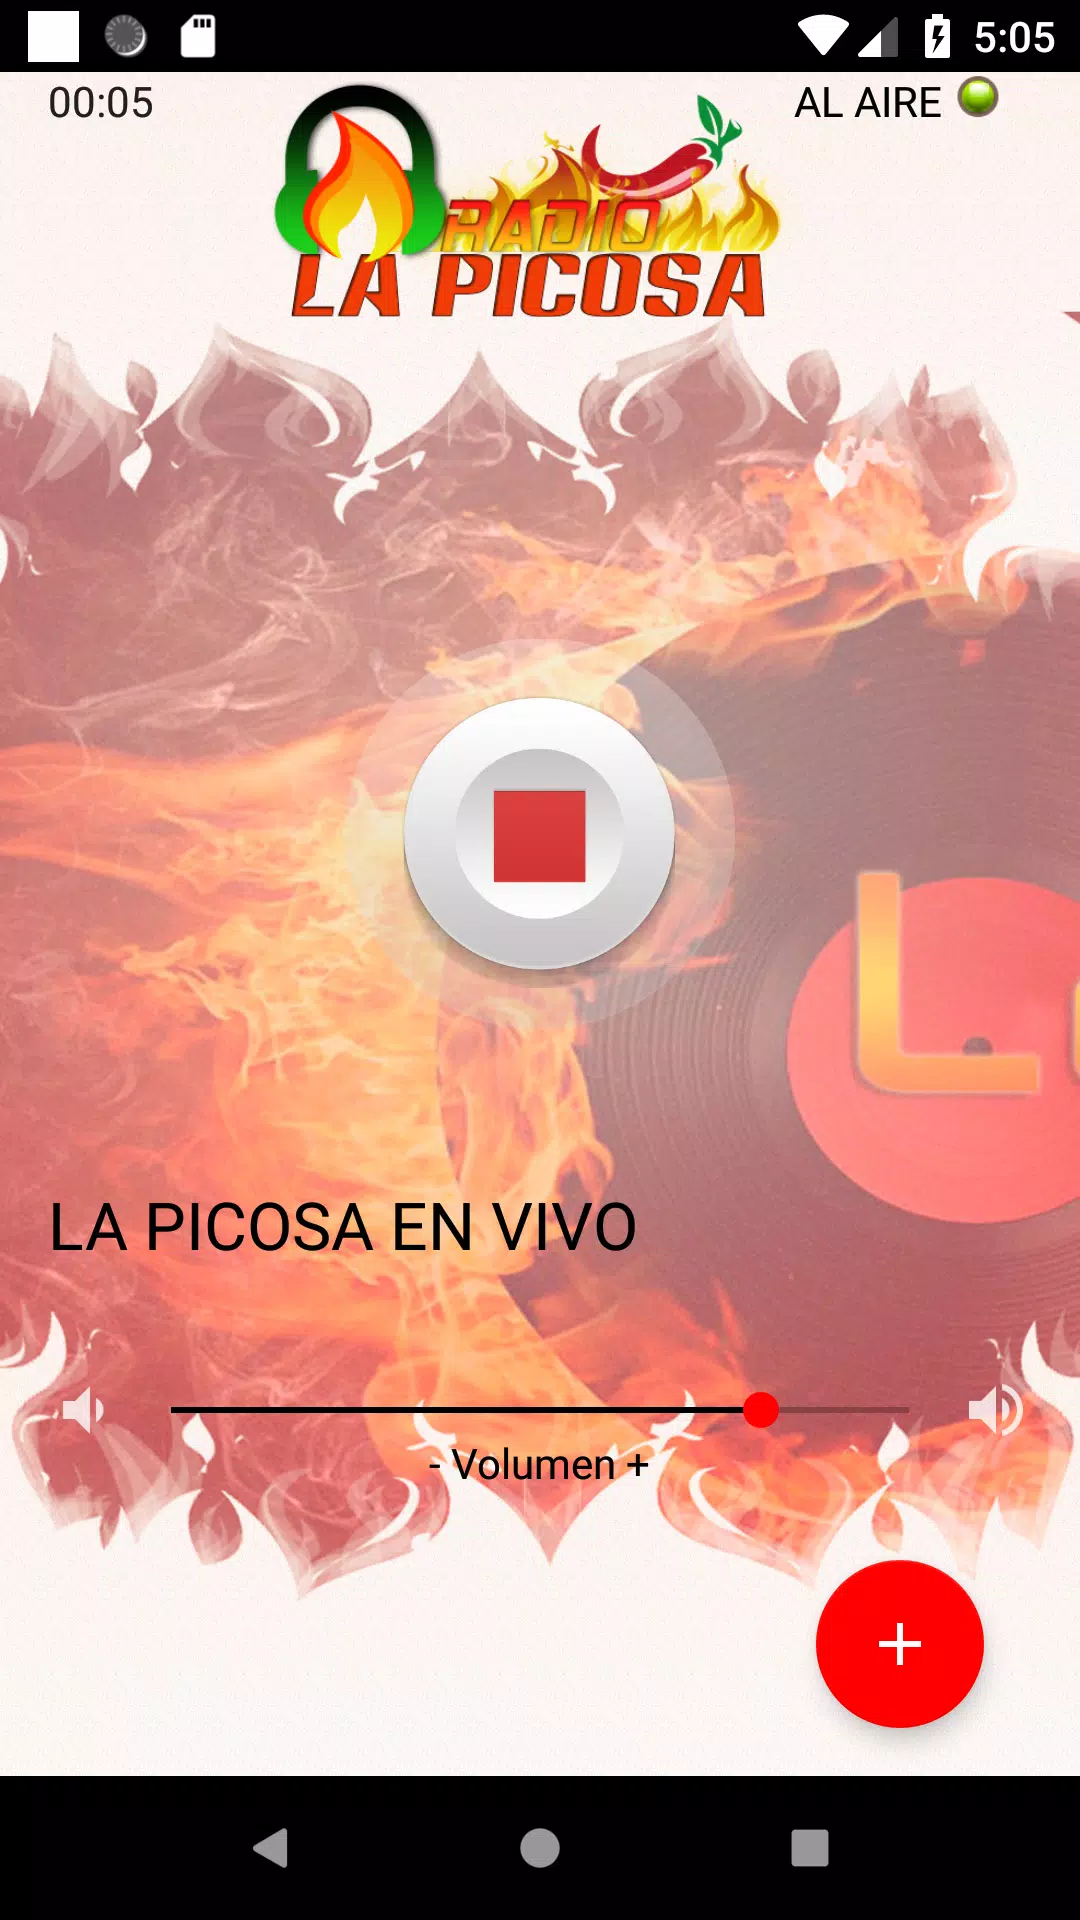 Radio La Picosa for Android - APK Download